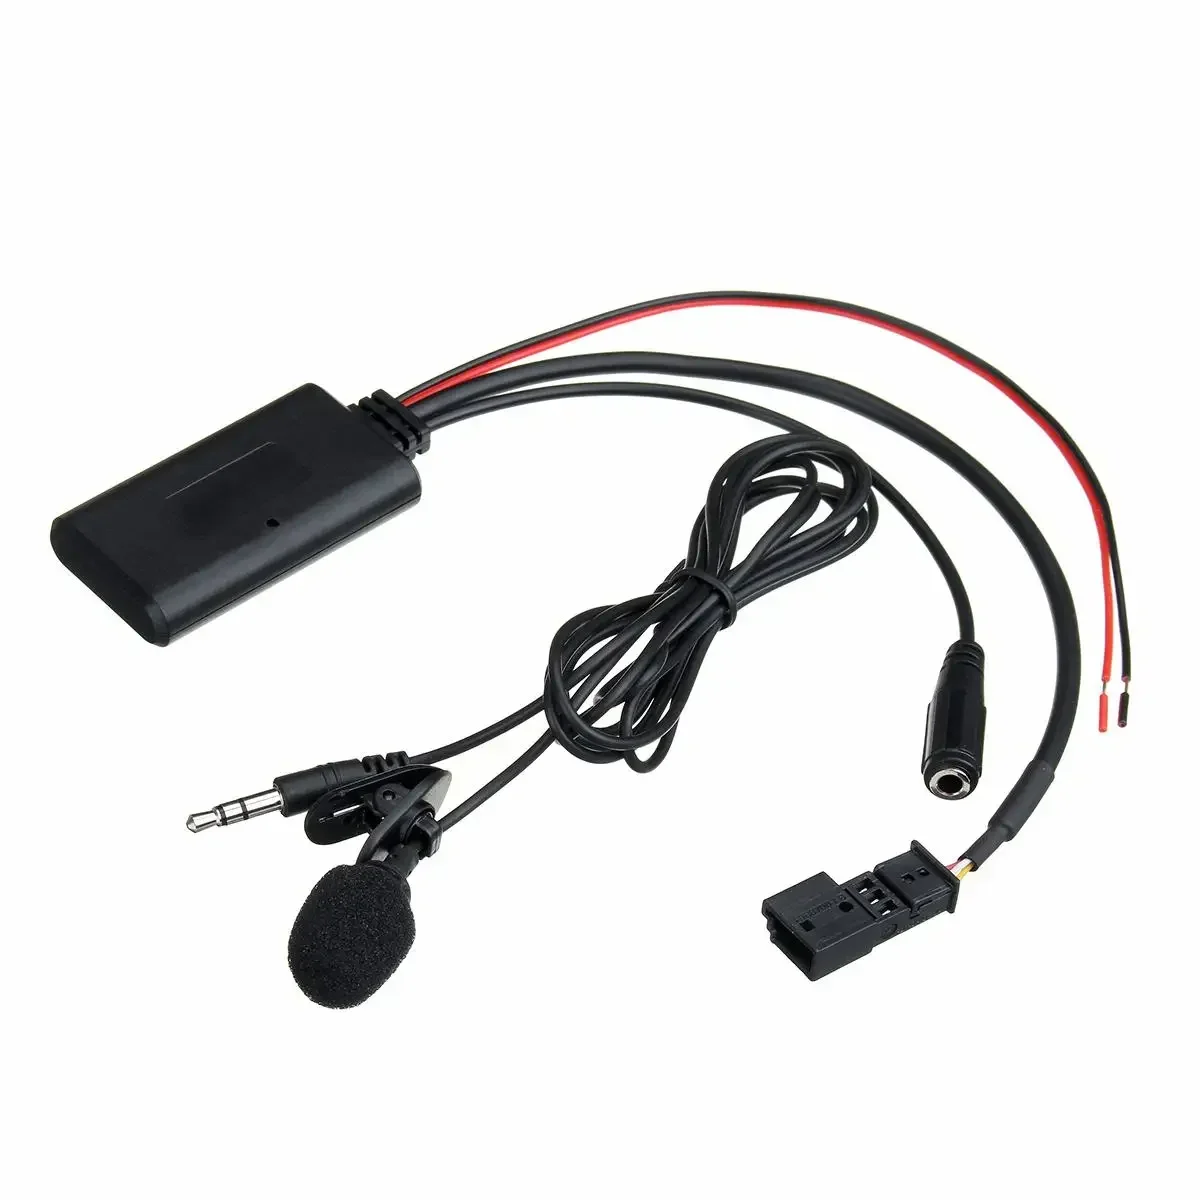 кабел-адаптер Bluetooth, Aux-приемник с микрофон за BMW E39 E46 E53 X5 2002-2006 година за интерфейс аудиоголовки с голям екран 16: 9